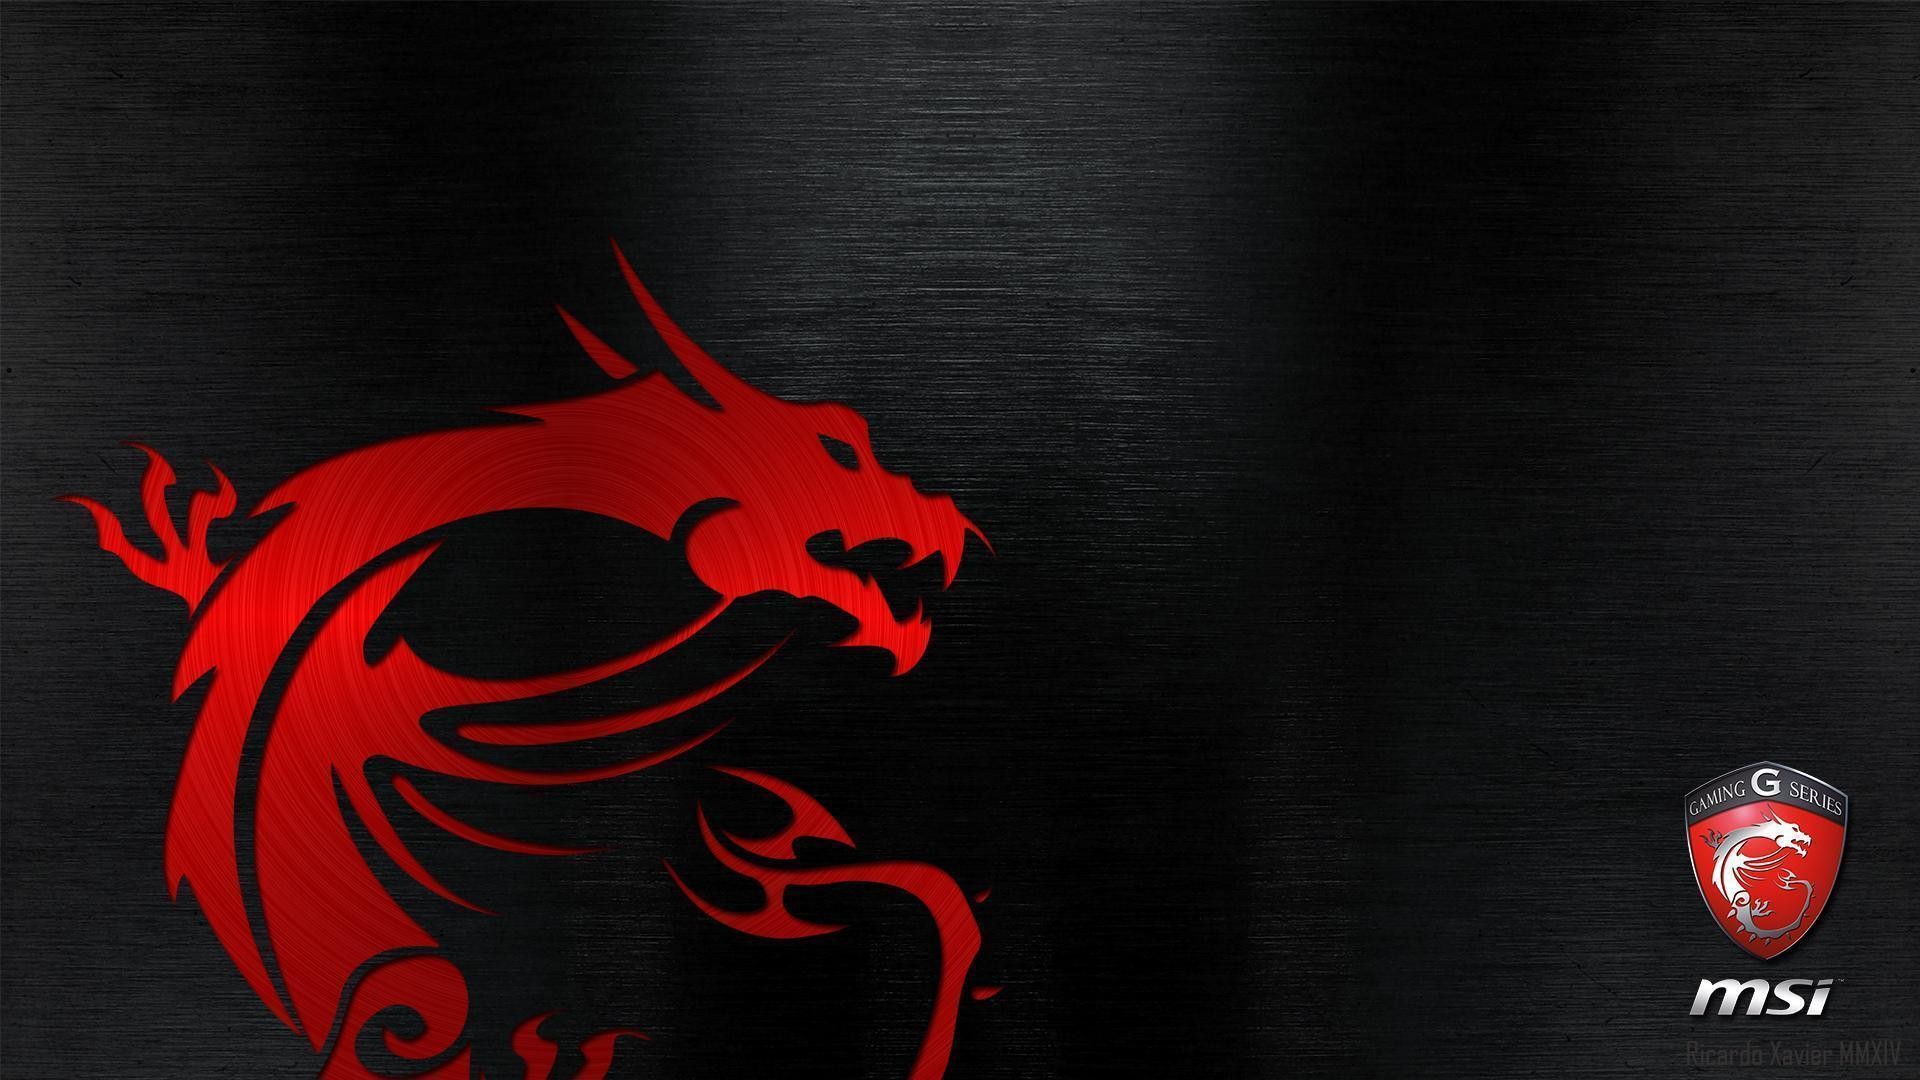 MSI Gaming Series Dragon Wallpaper by RicardoXavier on DeviantArt